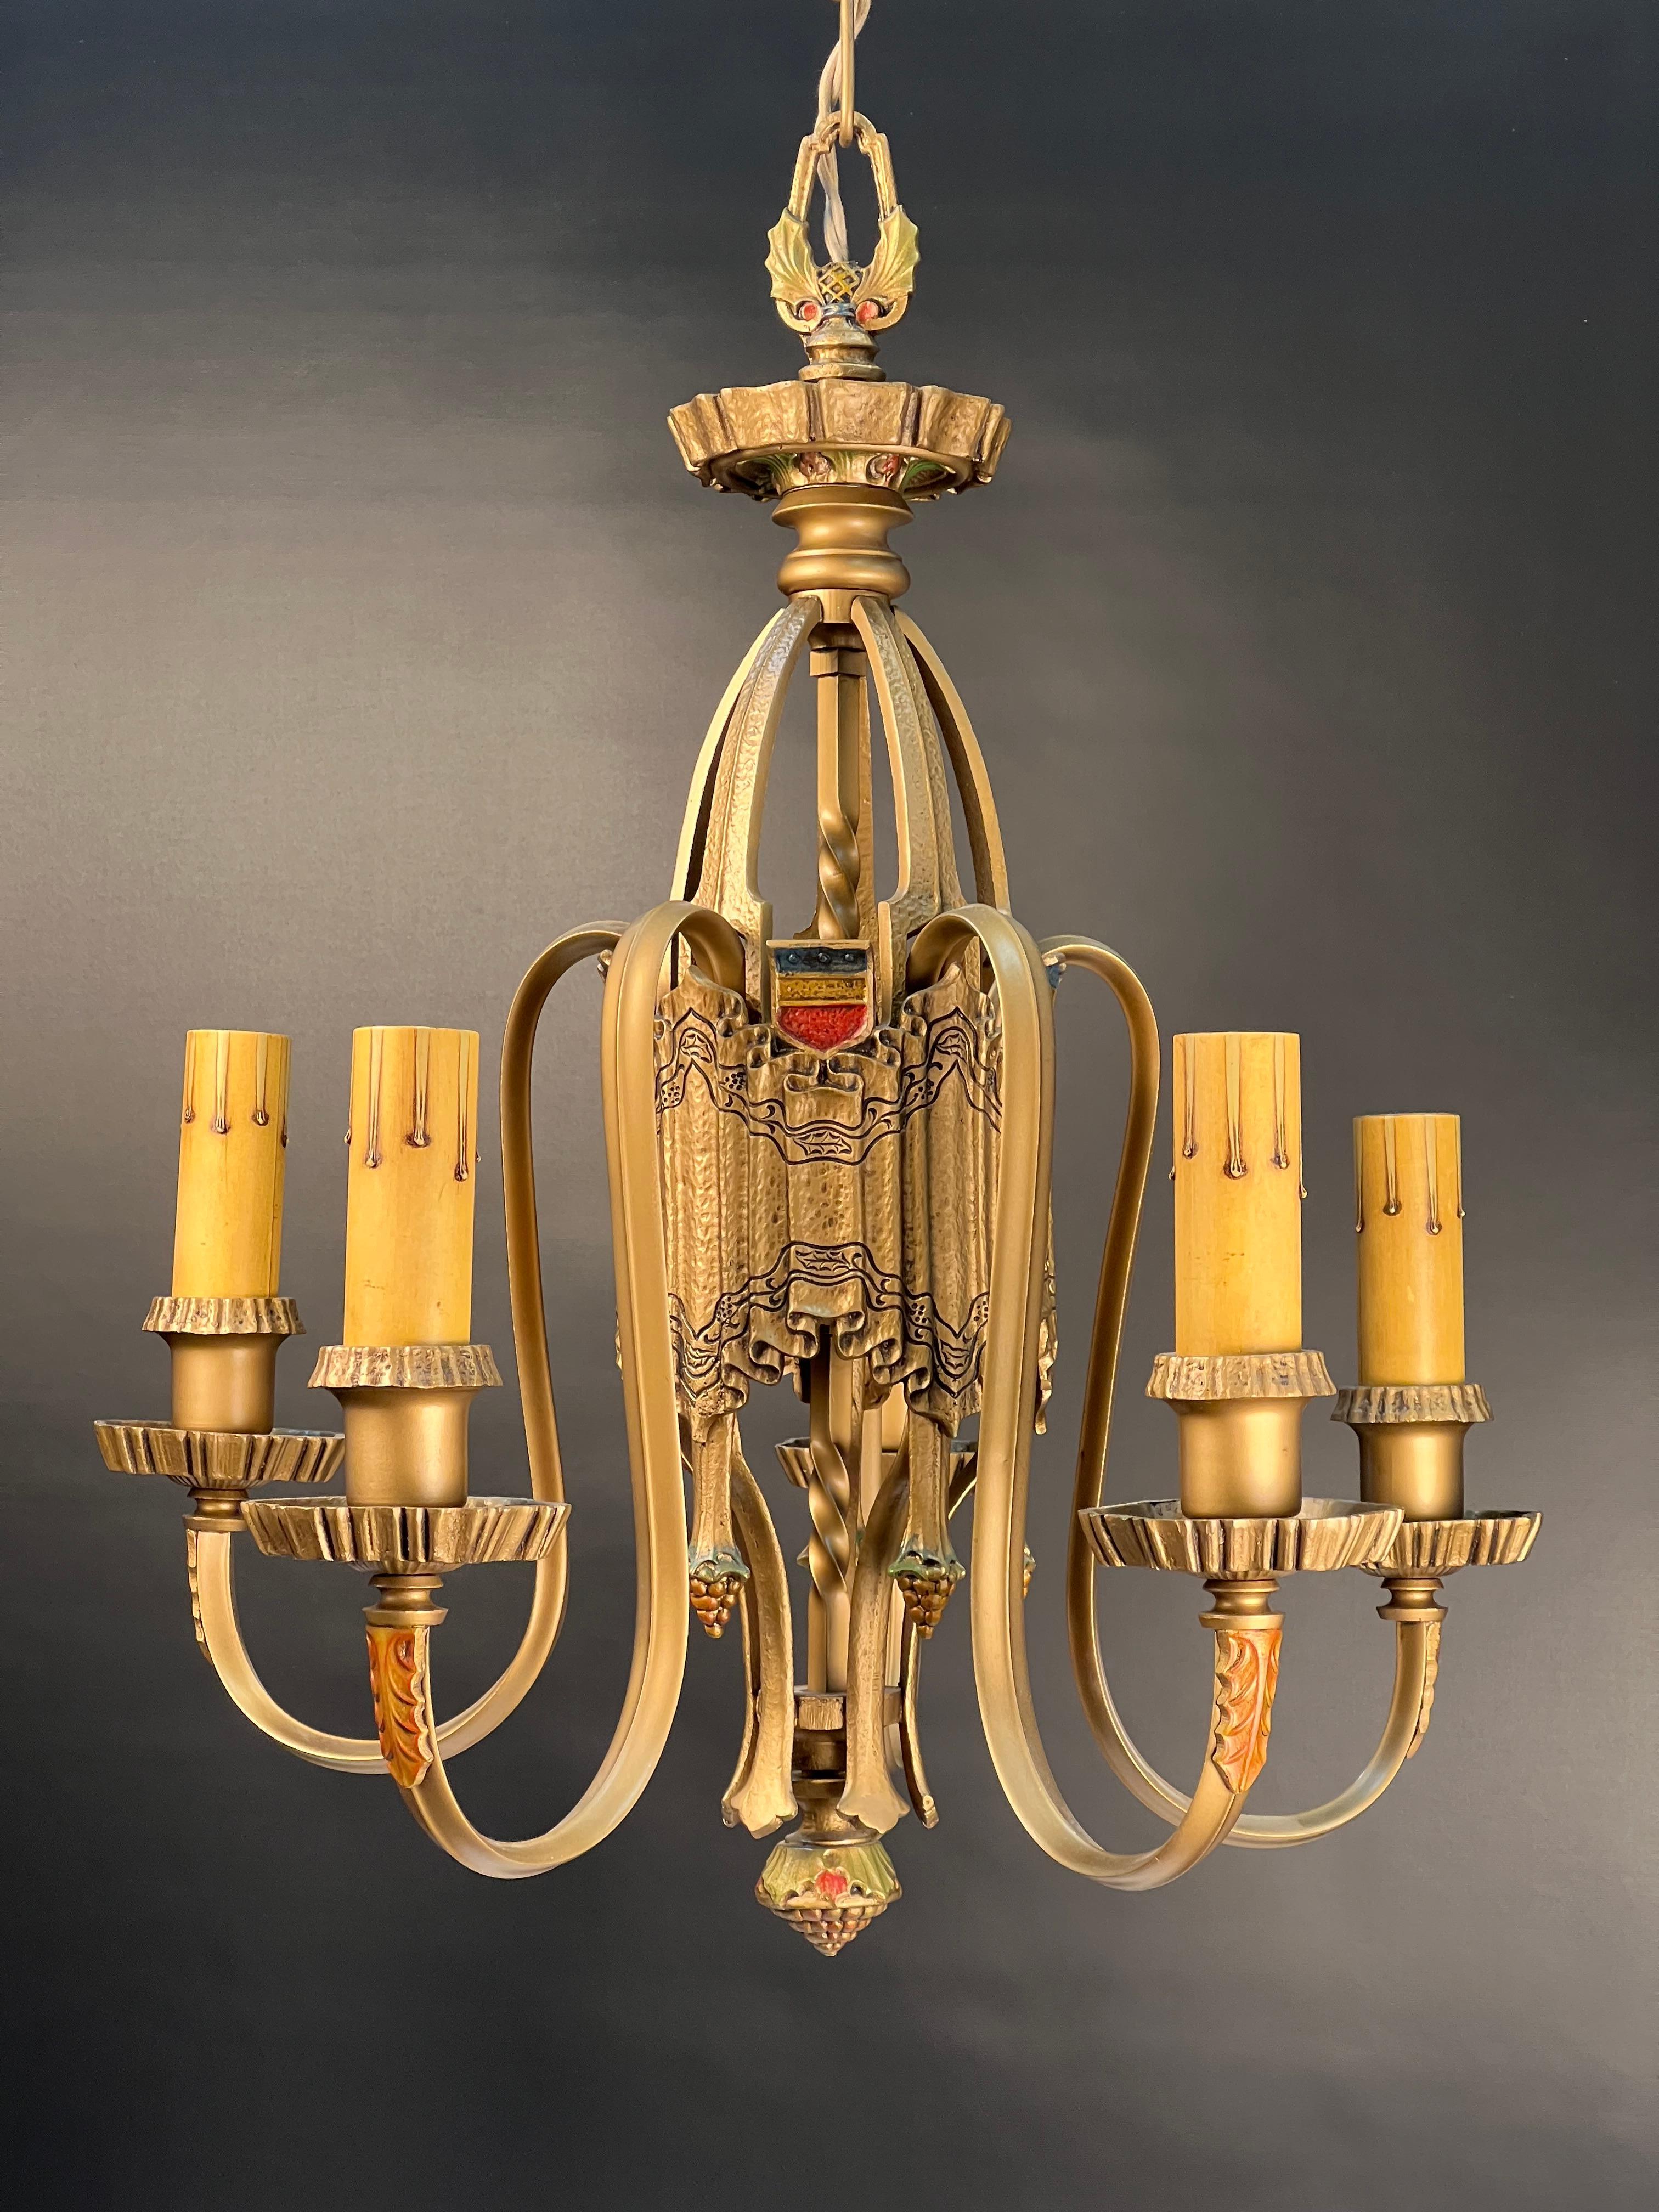 Ein schöner fünfflammiger Kronleuchter im Tudor-Stil aus den 1920er Jahren mit einer subtilen, reichen Goldpatina und klassischen polychromen Highlights.
Der zentrale Körper dieses Kronleuchters ist in der klassischen Form einer Leinenfalte